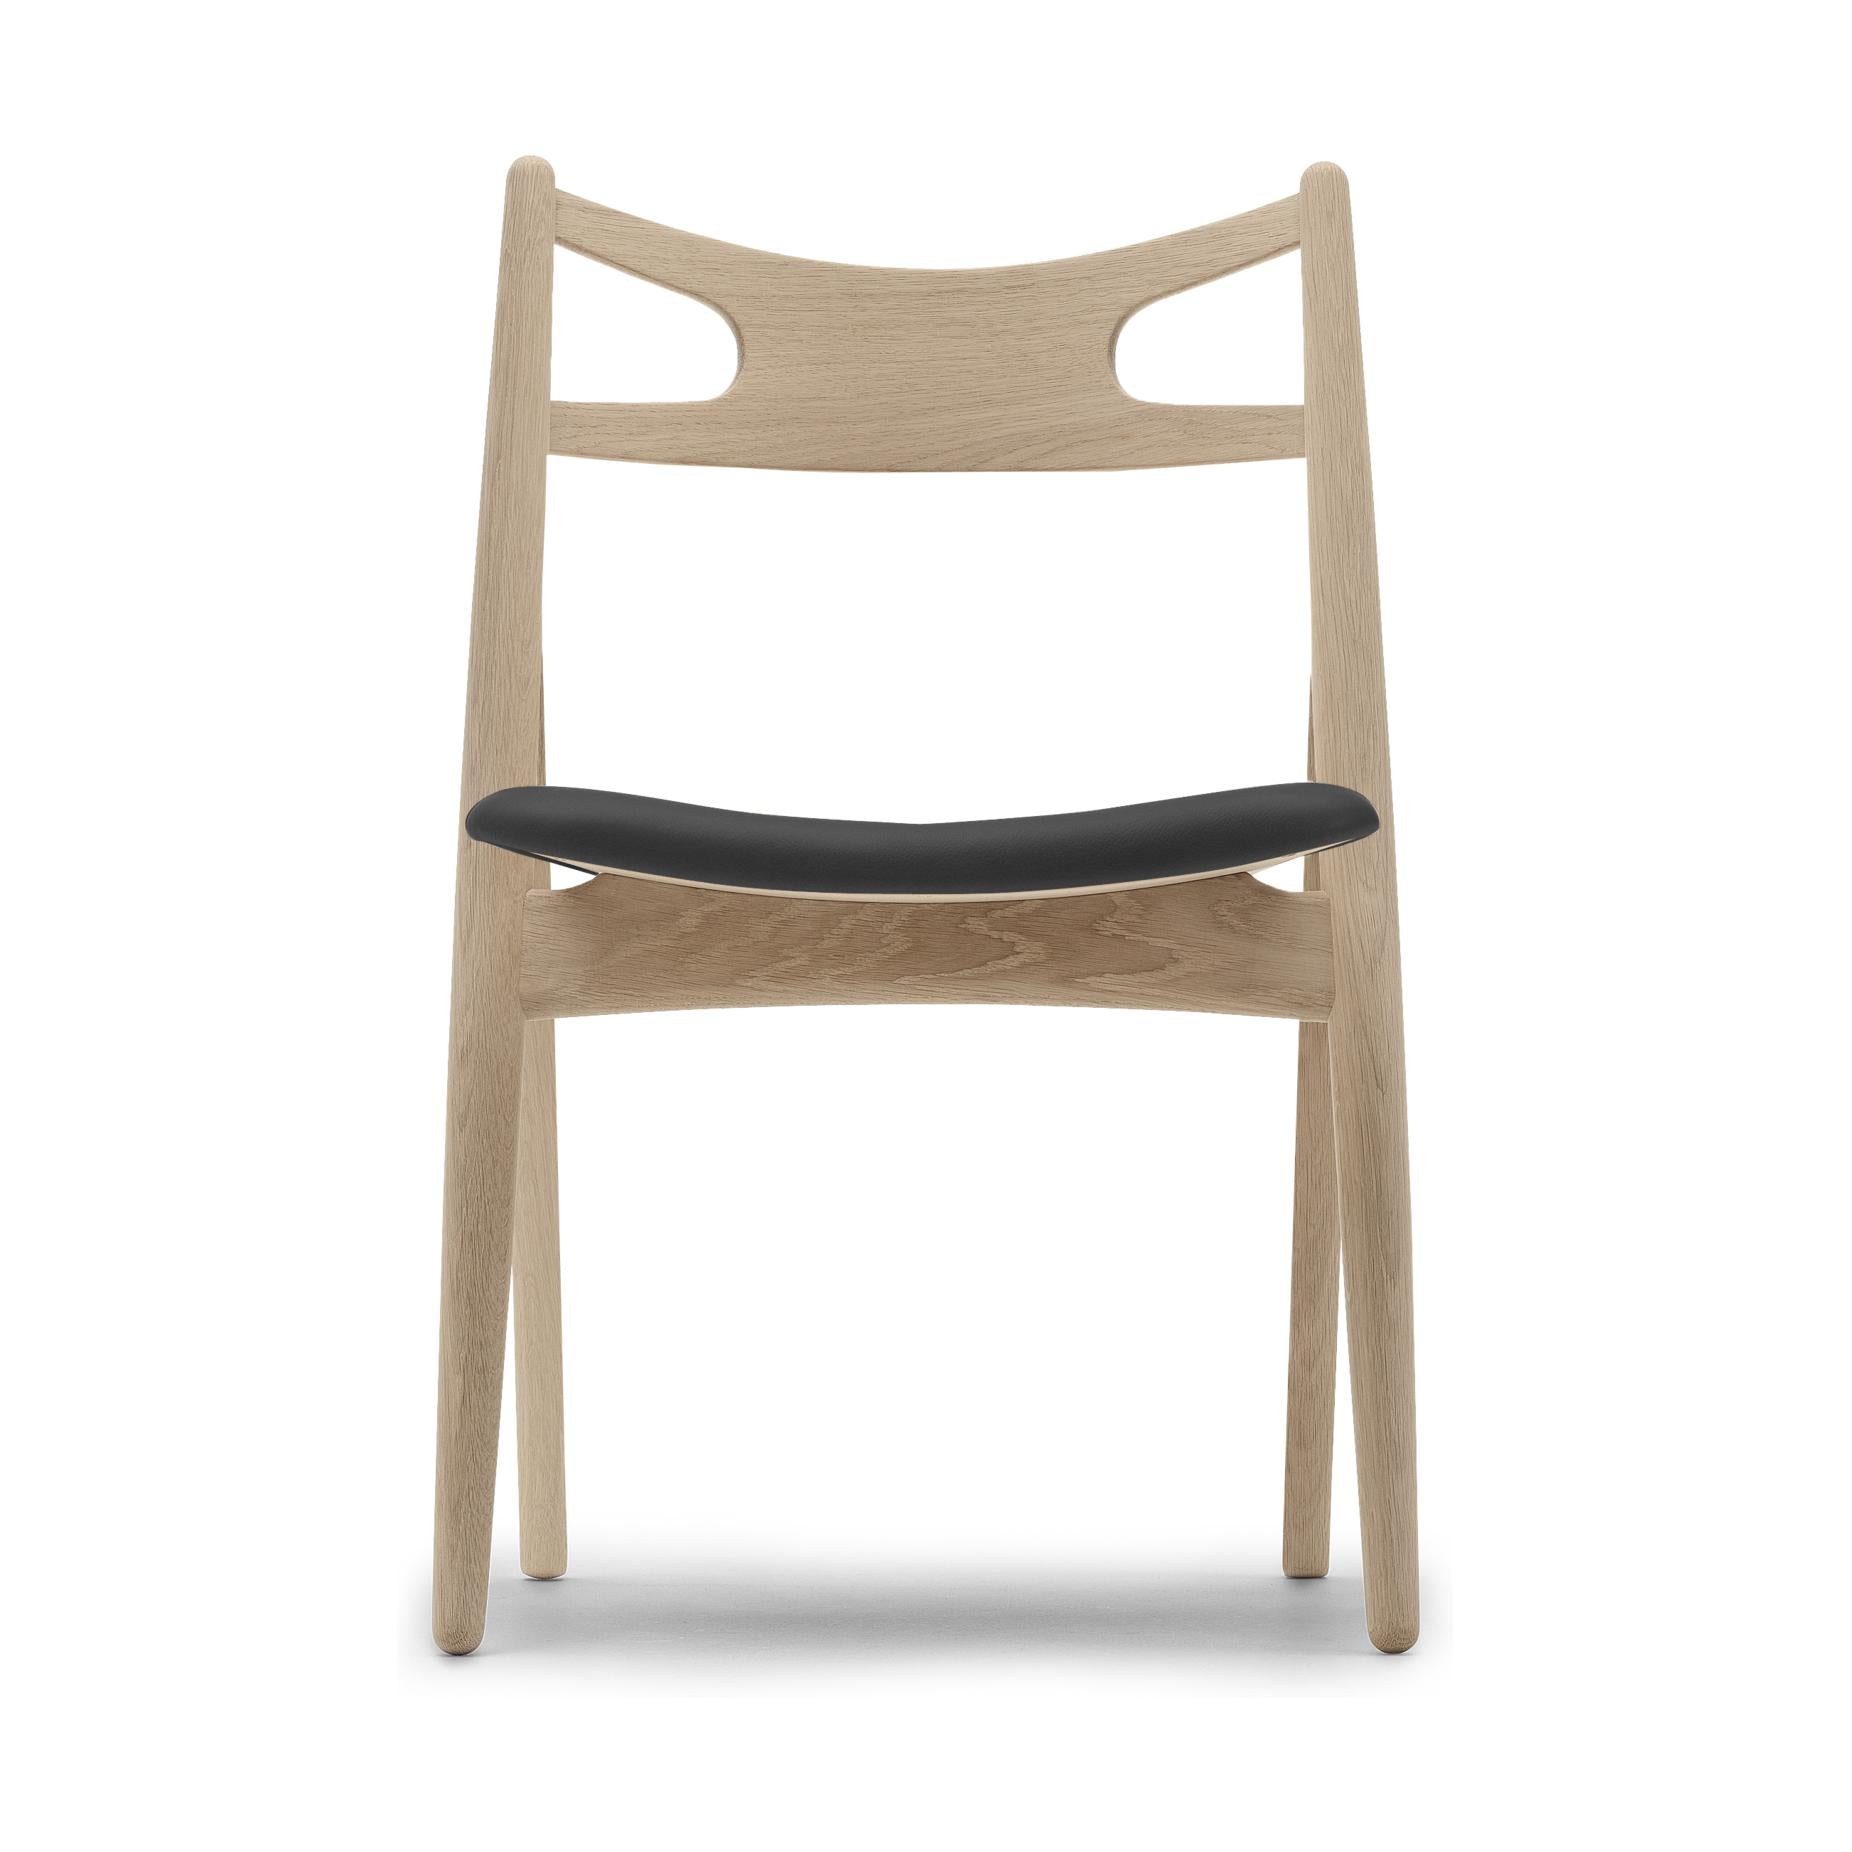 Carl Hansen CH29 P chaise à huile blanche chêne / cuir noir